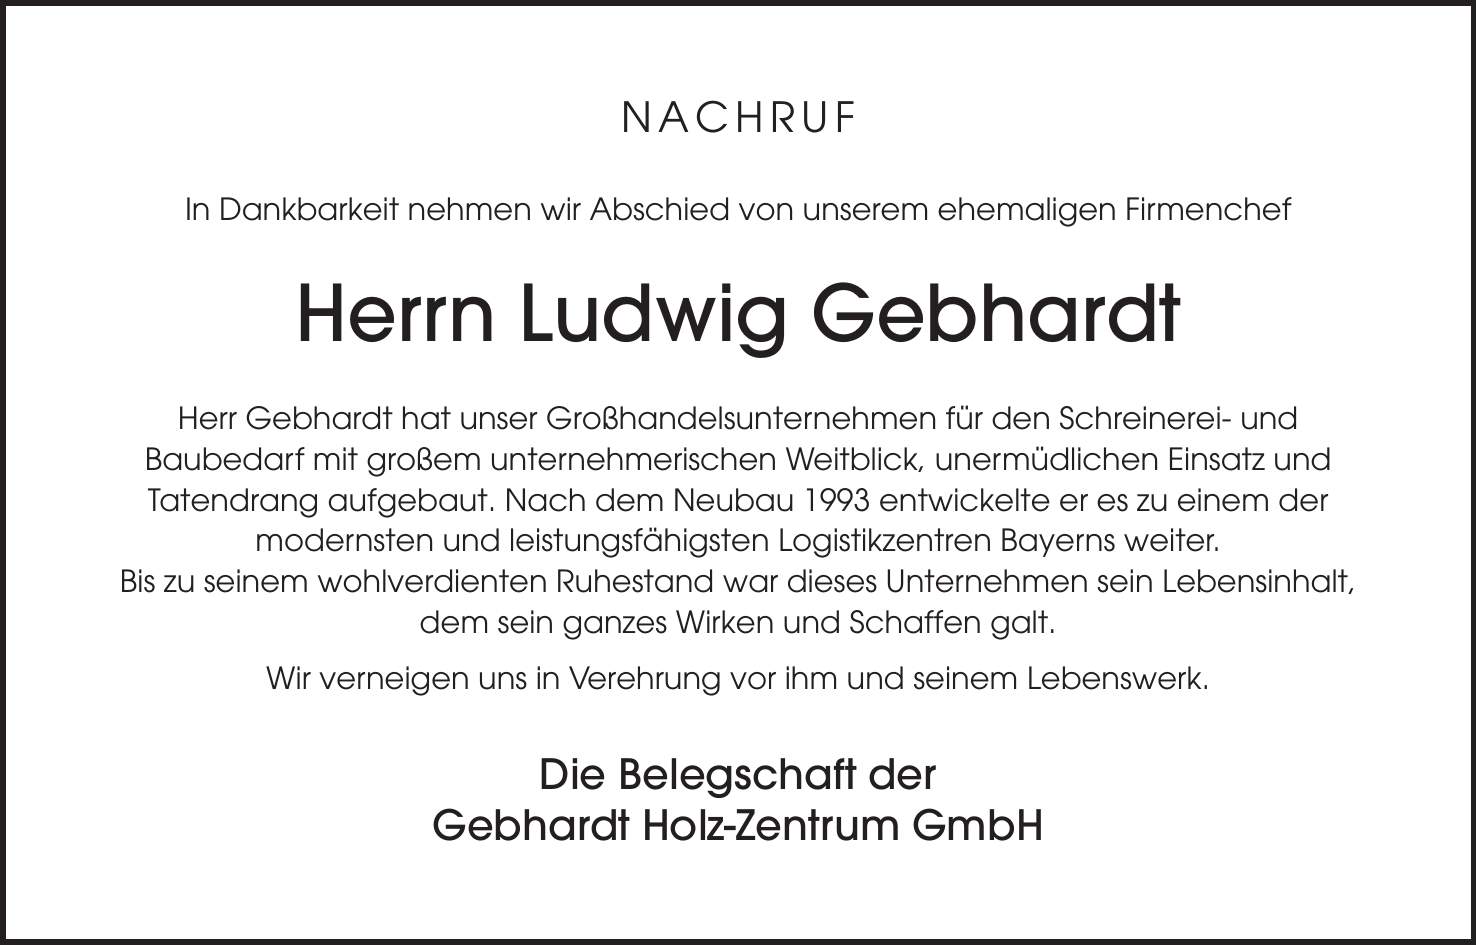 NACHRUF In Dankbarkeit nehmen wir Abschied von unserem ehemaligen Firmenchef Herrn Ludwig Gebhardt Herr Gebhardt hat unser Großhandelsunternehmen für den Schreinerei- und Baubedarf mit großem unternehmerischen Weitblick, unermüdlichen Einsatz und Tatendrang aufgebaut. Nach dem Neubau 1993 entwickelte er es zu einem der modernsten und leistungsfähigsten Logistikzentren Bayerns weiter. Bis zu seinem wohlverdienten Ruhestand war dieses Unternehmen sein Lebensinhalt, dem sein ganzes Wirken und Schaffen galt. Wir verneigen uns in Verehrung vor ihm und seinem Lebenswerk. Die Belegschaft der Gebhardt Holz-Zentrum GmbH